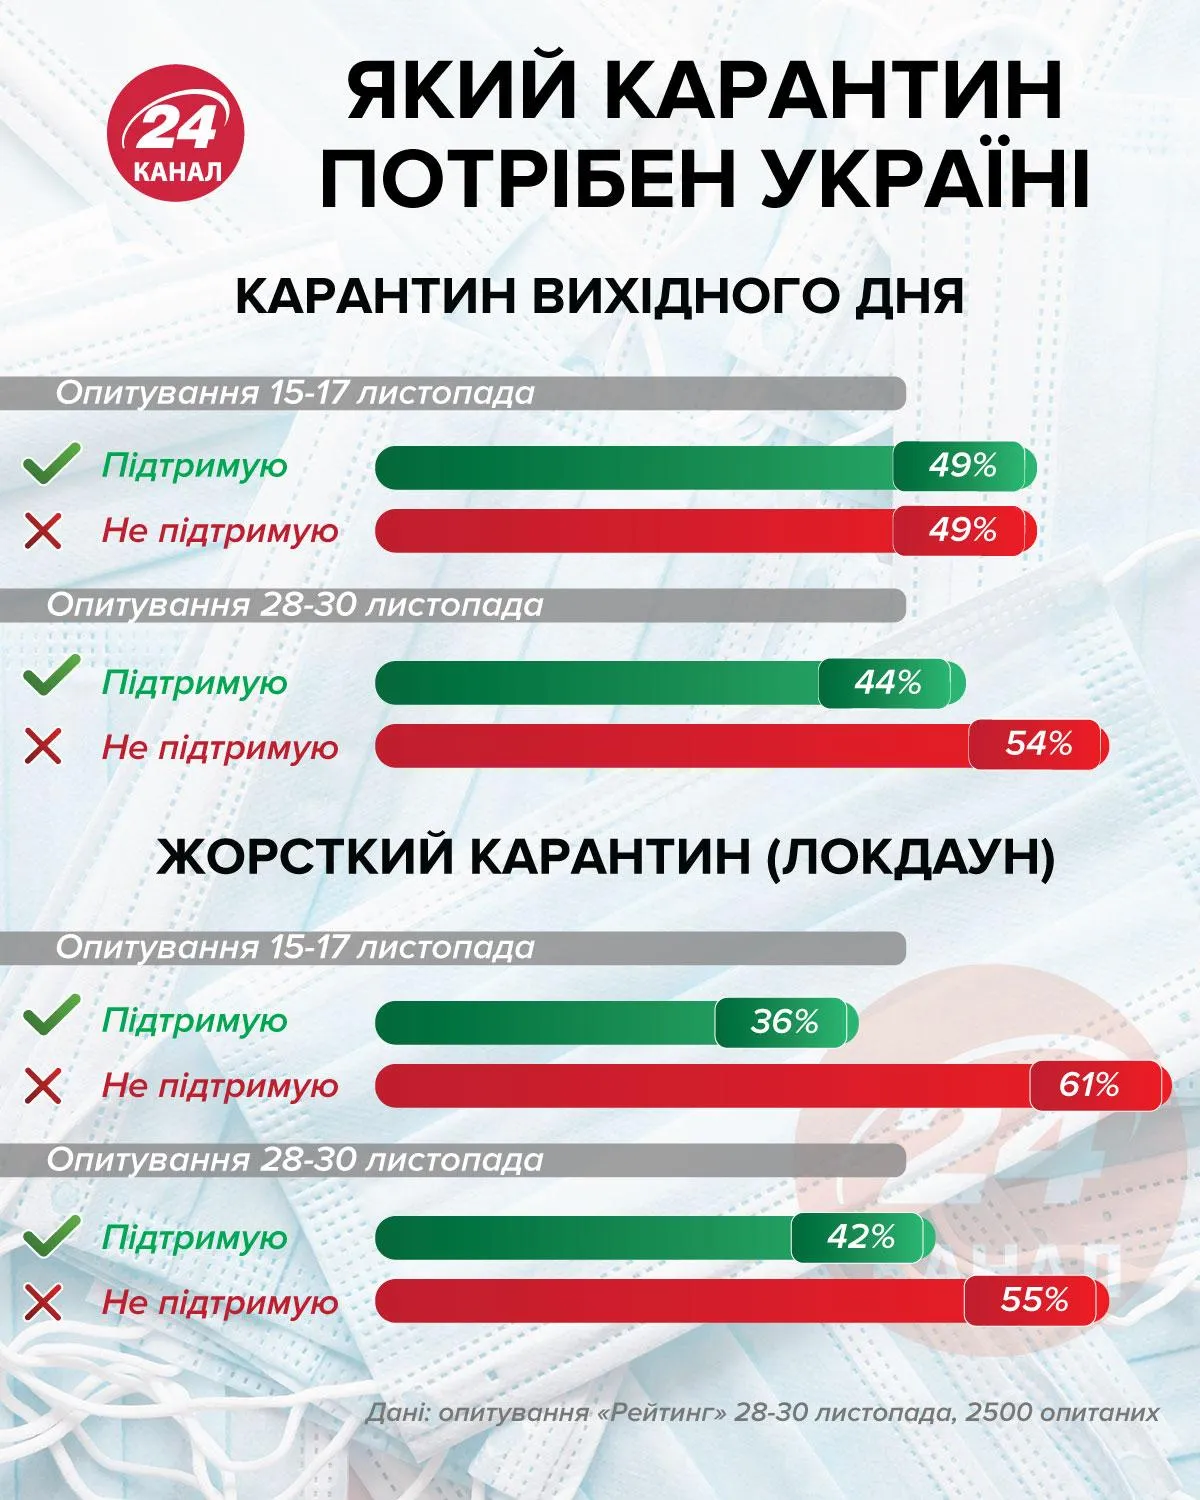 Какой карантин поддерживают украинцы Инфографика 24 канала